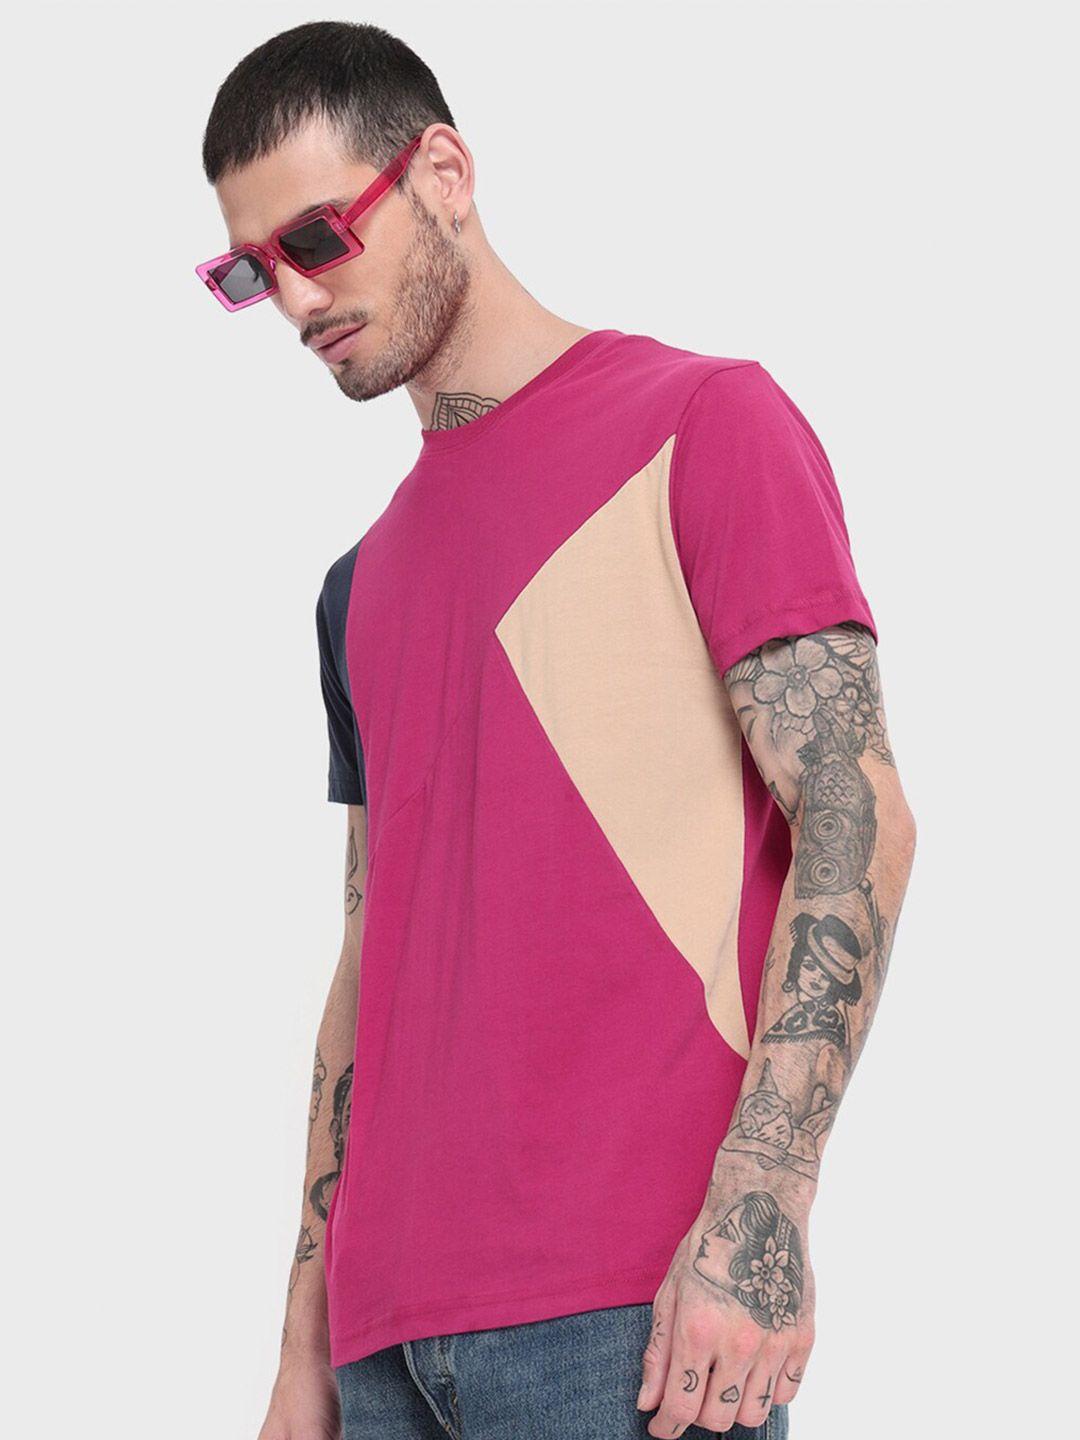 bewakoof men pink colourblocked t-shirt